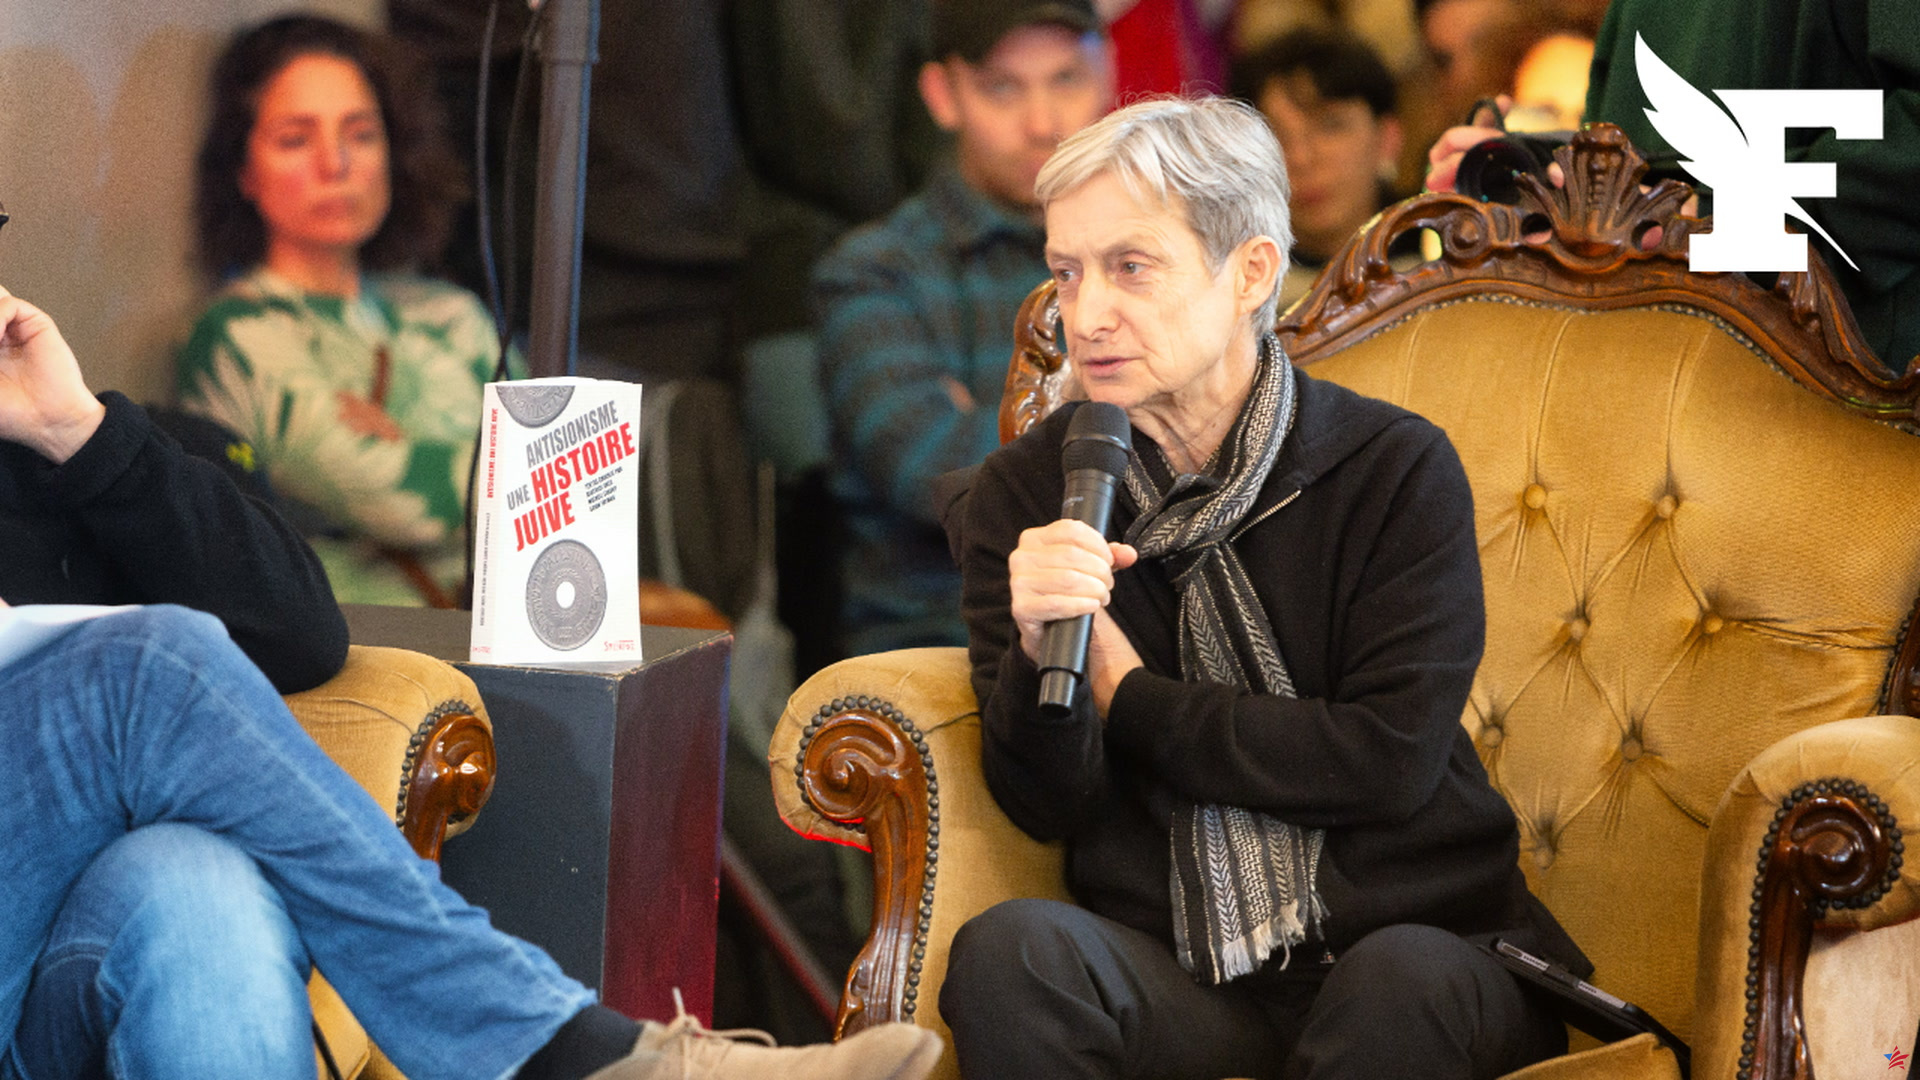 “Judith Butler y Hamás: cuando el feminismo radical blanquea el terrorismo”